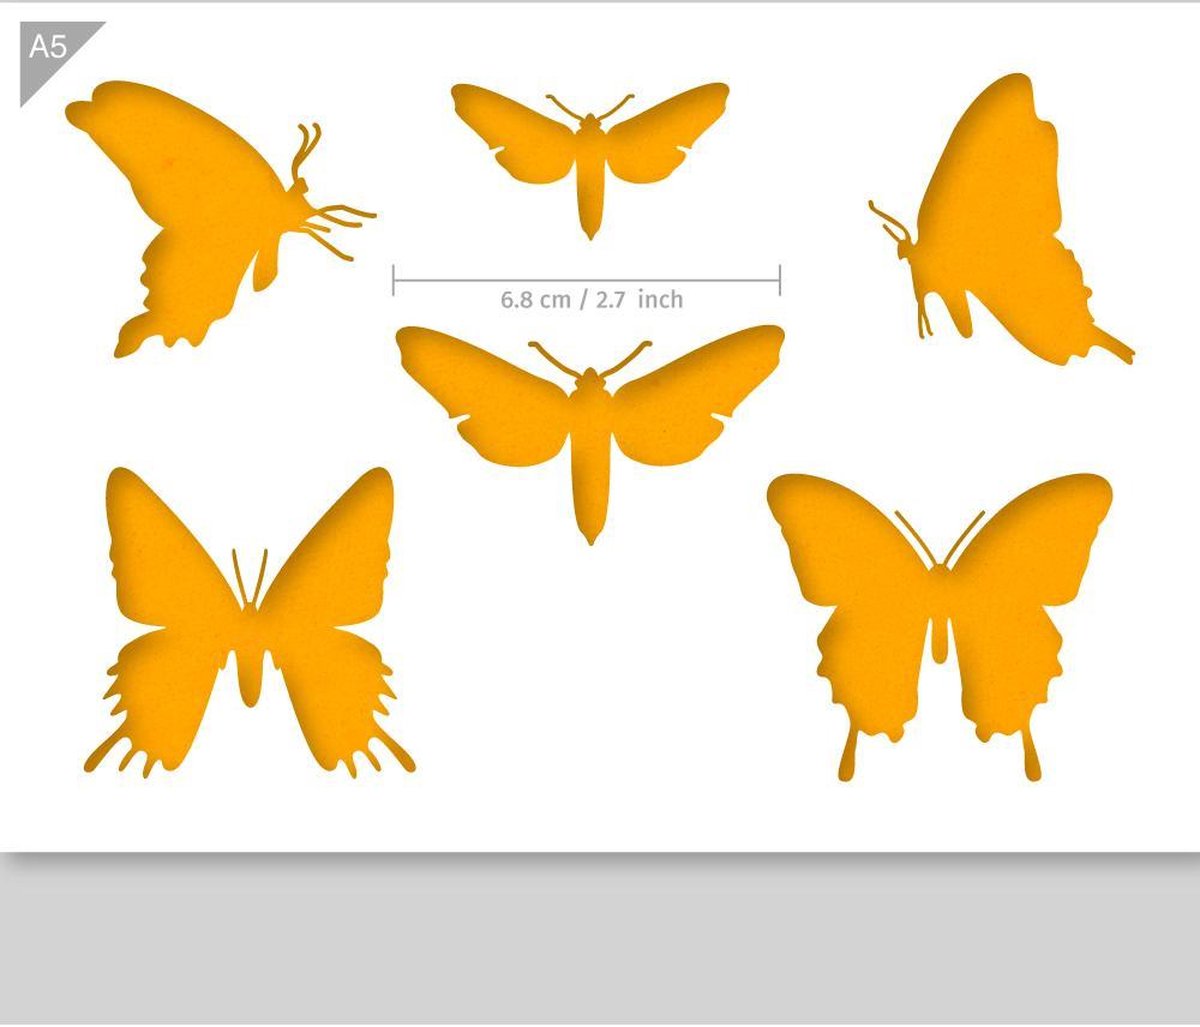 QBIX Vlinders Sjabloon A5 Formaat Kunststof - Middelste vlinder is 7cm breed - QBIX